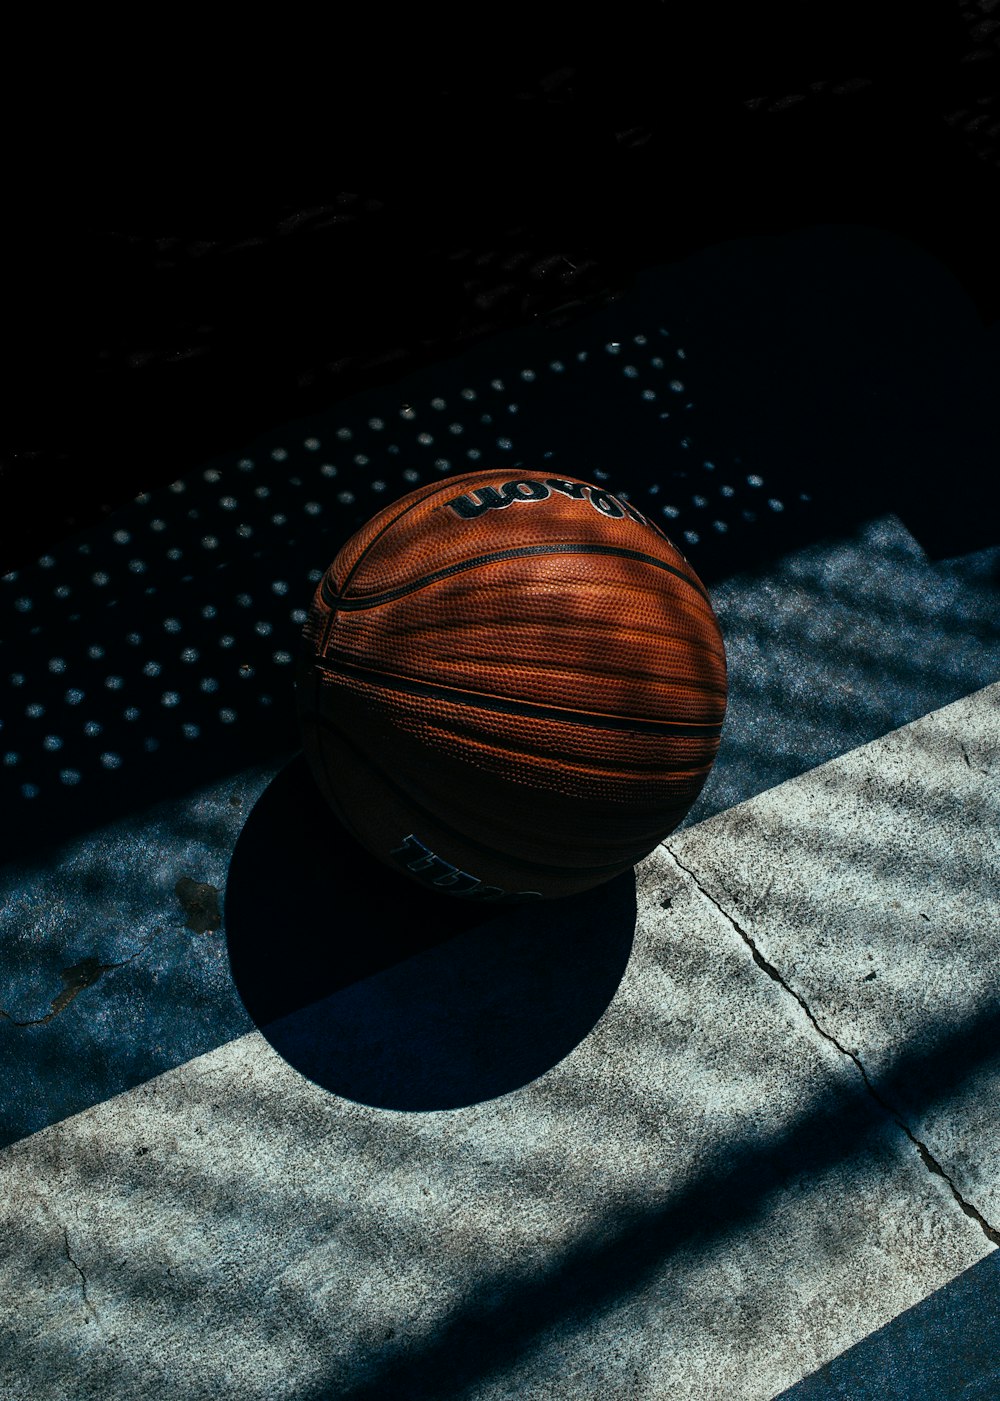 Roter Basketball